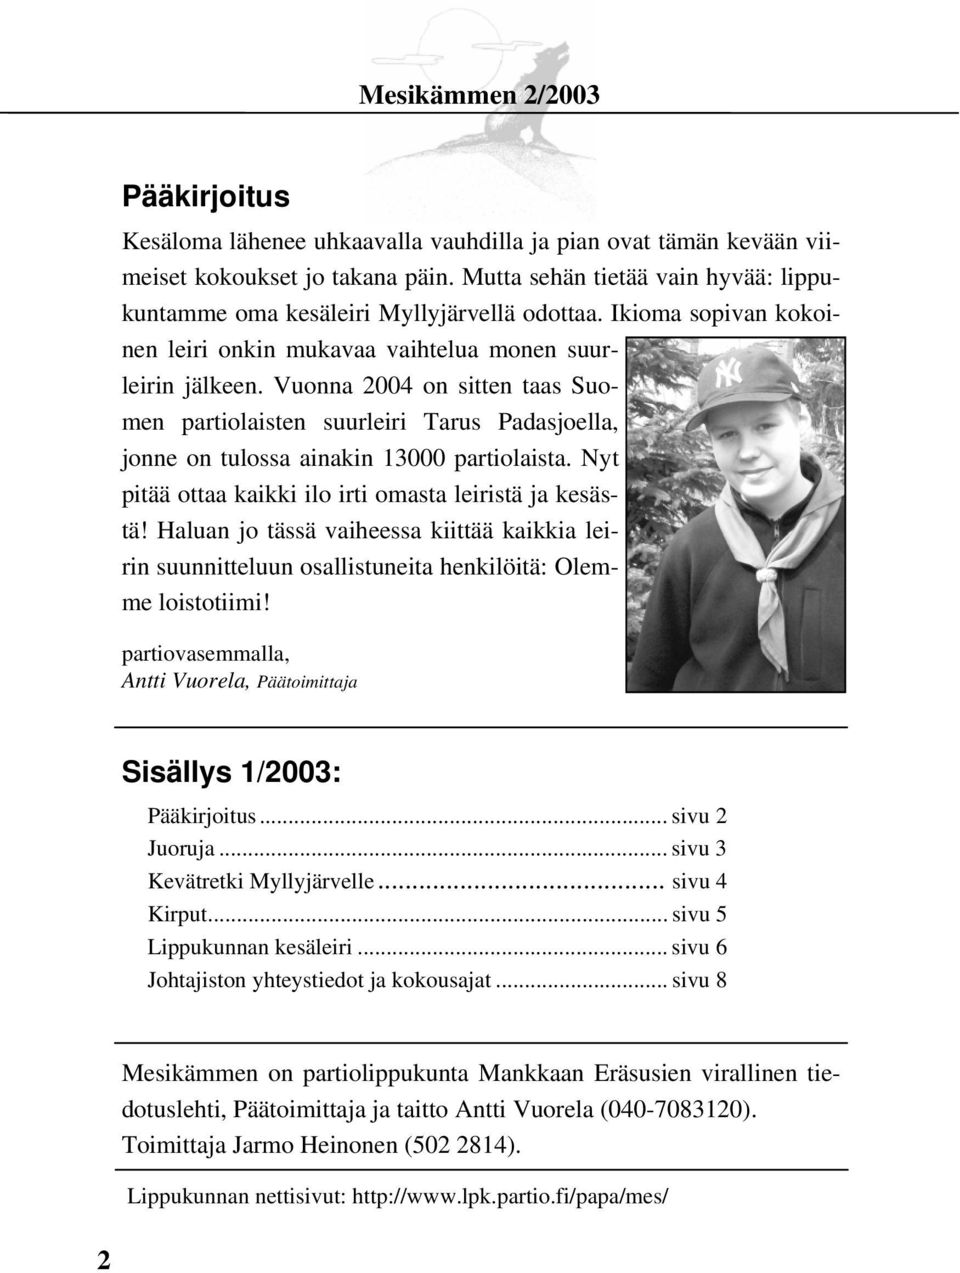 Vuonna 2004 on sitten taas Suomen partiolaisten suurleiri Tarus Padasjoella, jonne on tulossa ainakin 13000 partiolaista. Nyt pitää ottaa kaikki ilo irti omasta leiristä ja kesästä!